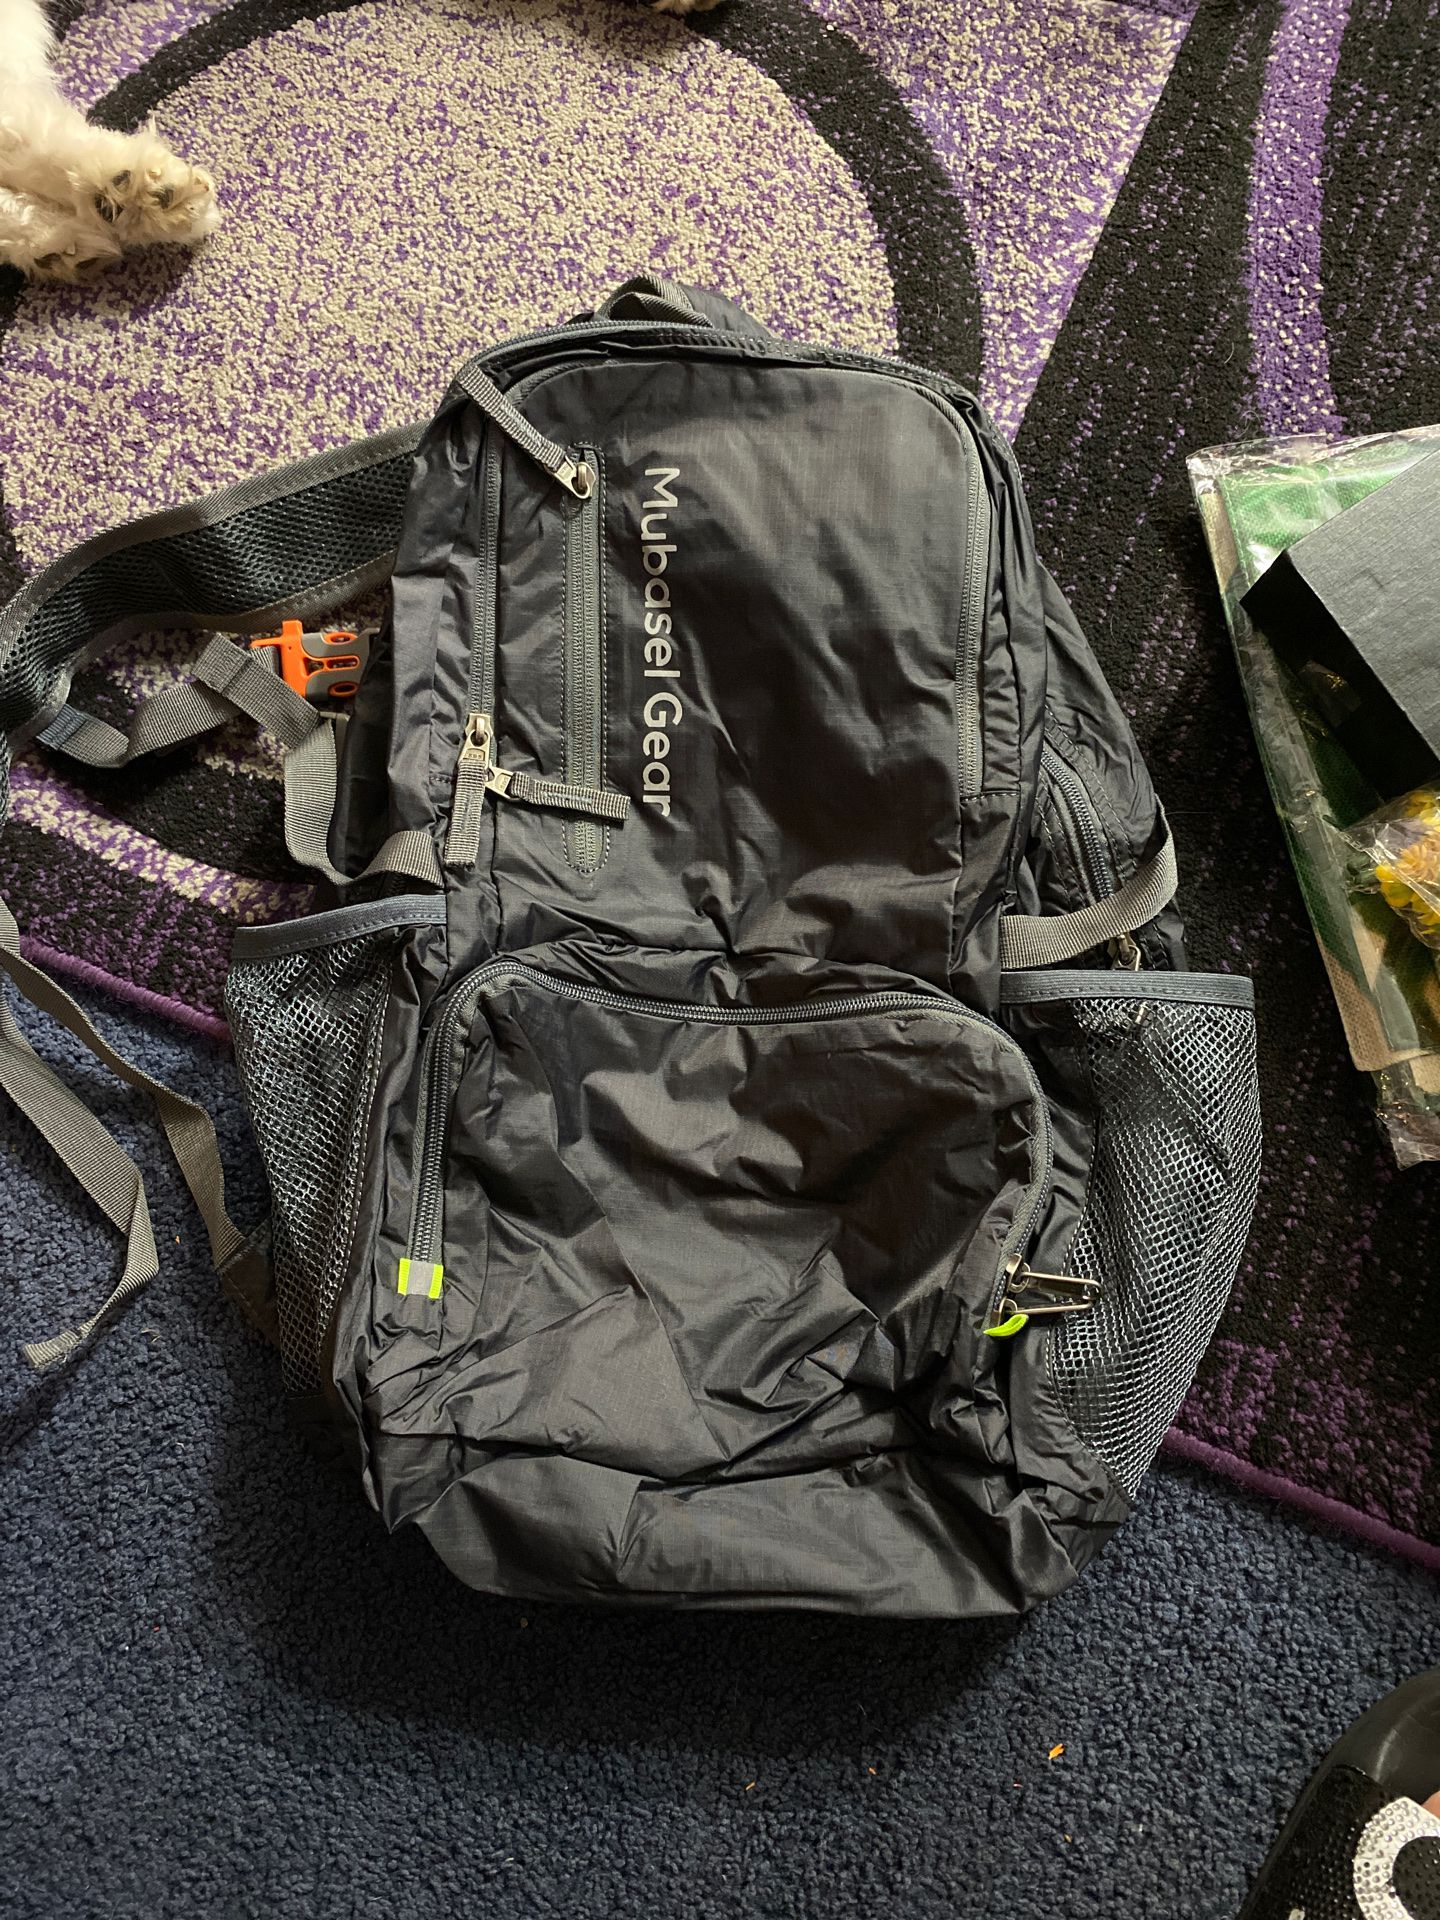 Mubasel gear light weight backpack gray